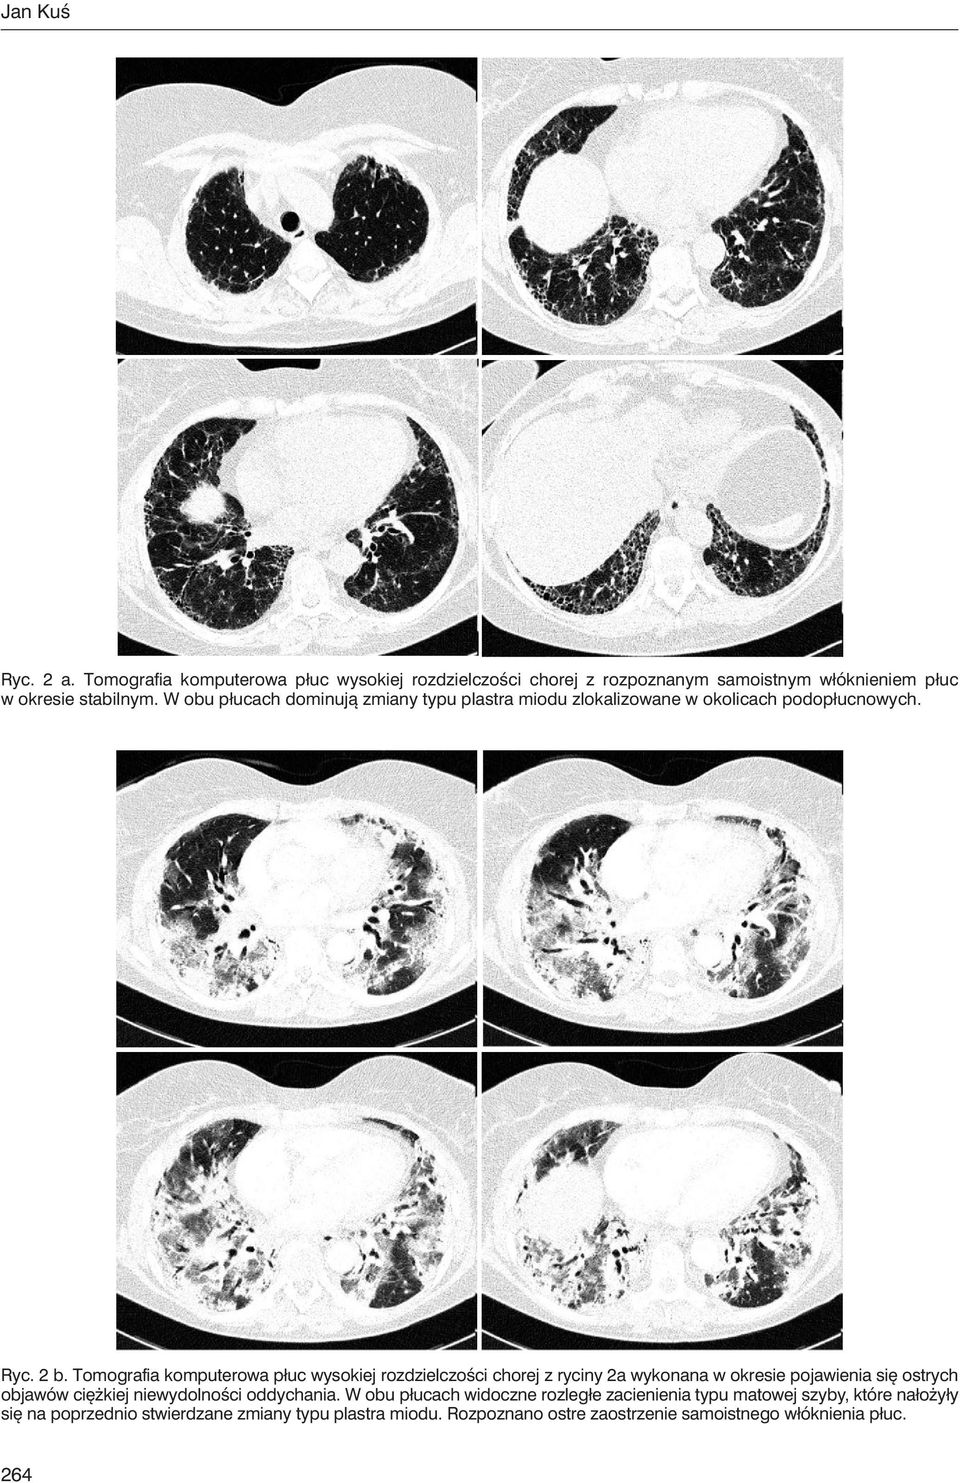 Tomografia komputerowa płuc wysokiej rozdzielczości chorej z ryciny 2a wykonana w okresie pojawienia się ostrych objawów ciężkiej niewydolności